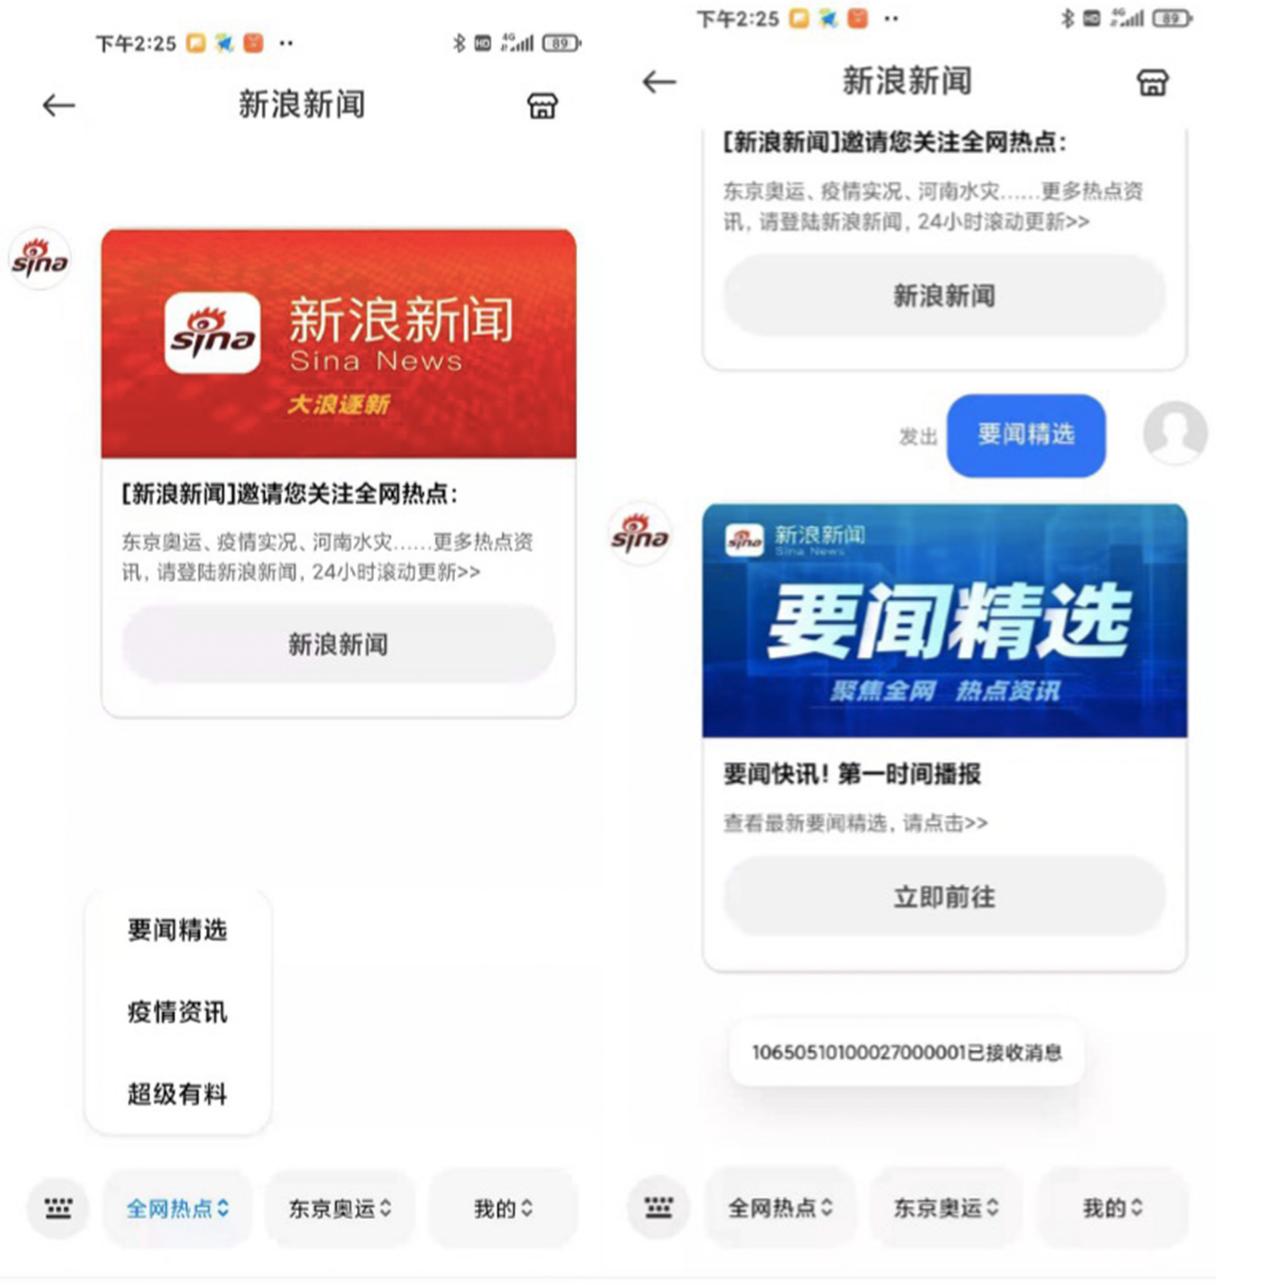 新浪新闻携手北京移动 提供国内首家5G消息新文娱媒体服务插图